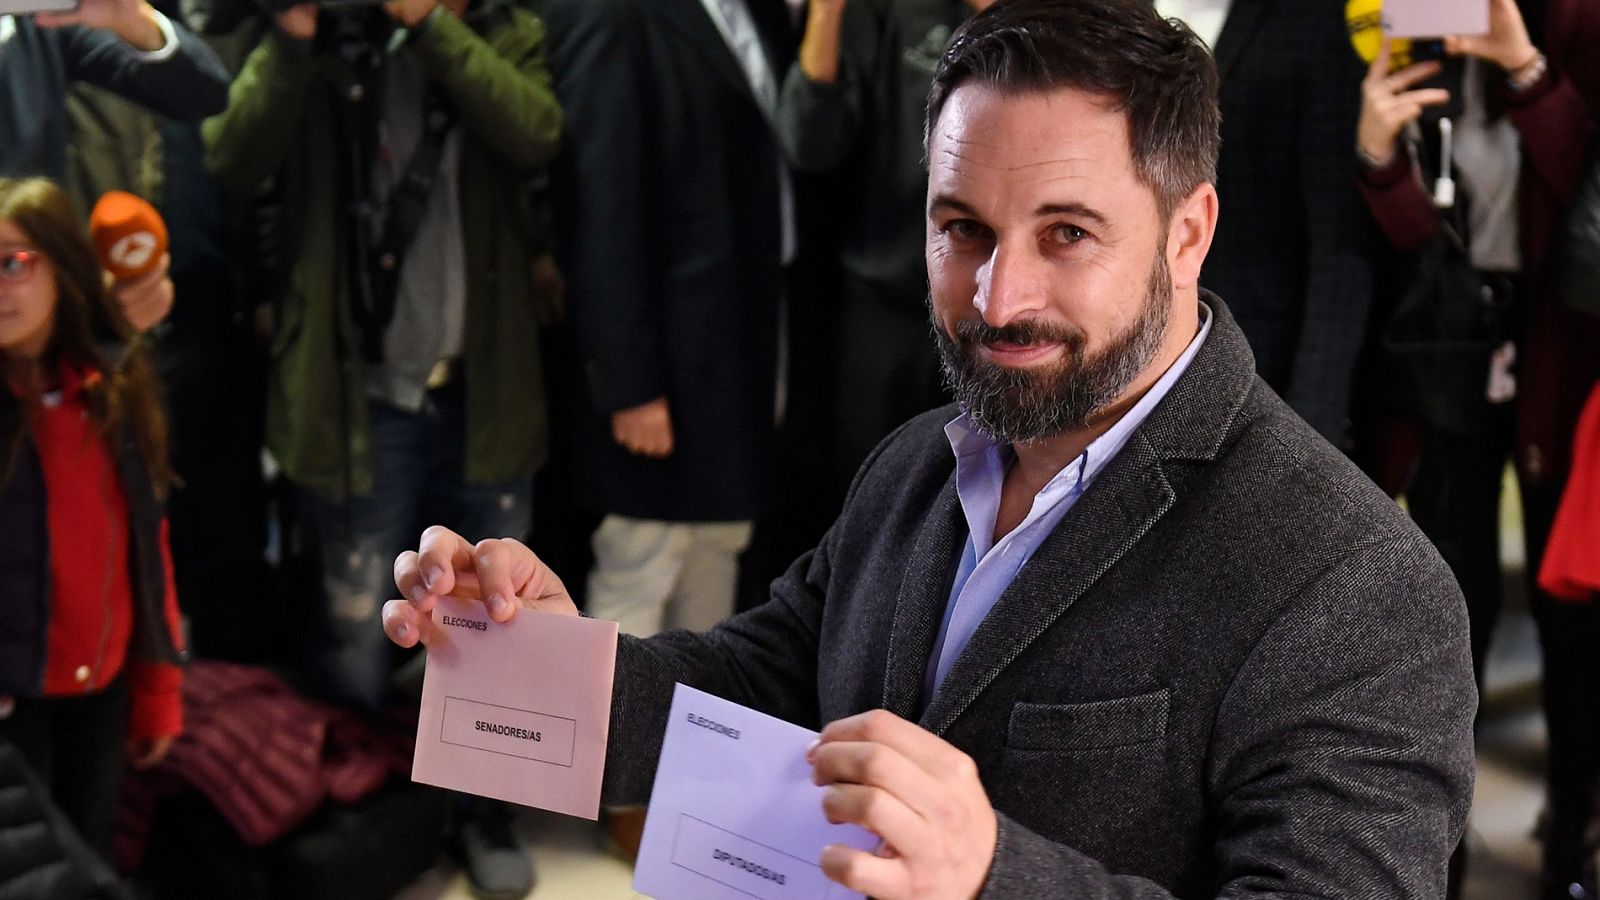 Elecciones generales: Abascal: "Espero que el resultado electoral sirva para afianzar la unidad de España" - RTVE.es